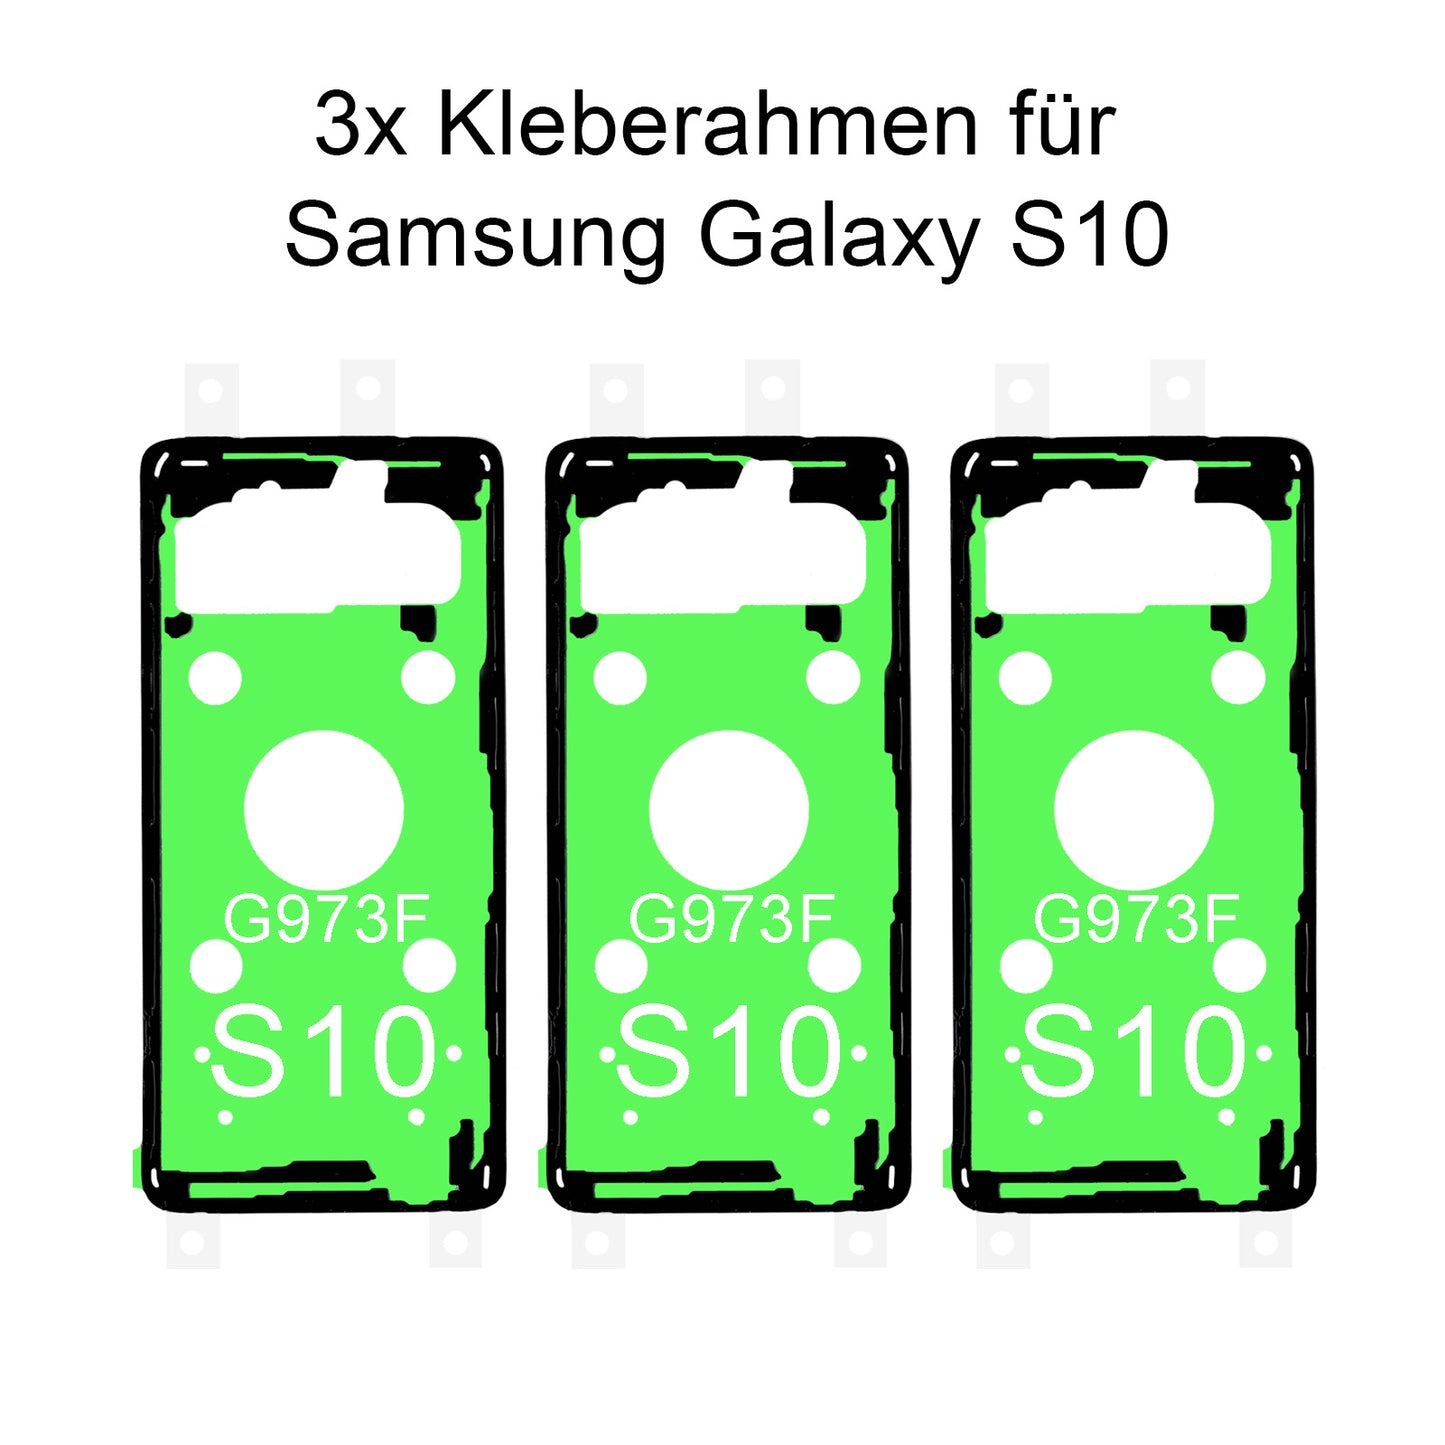 3x von unsern Samsung Galaxy S10 G973F Kleberahmen, jetzt im Dinngsonline Shop entdecken und bestellen!